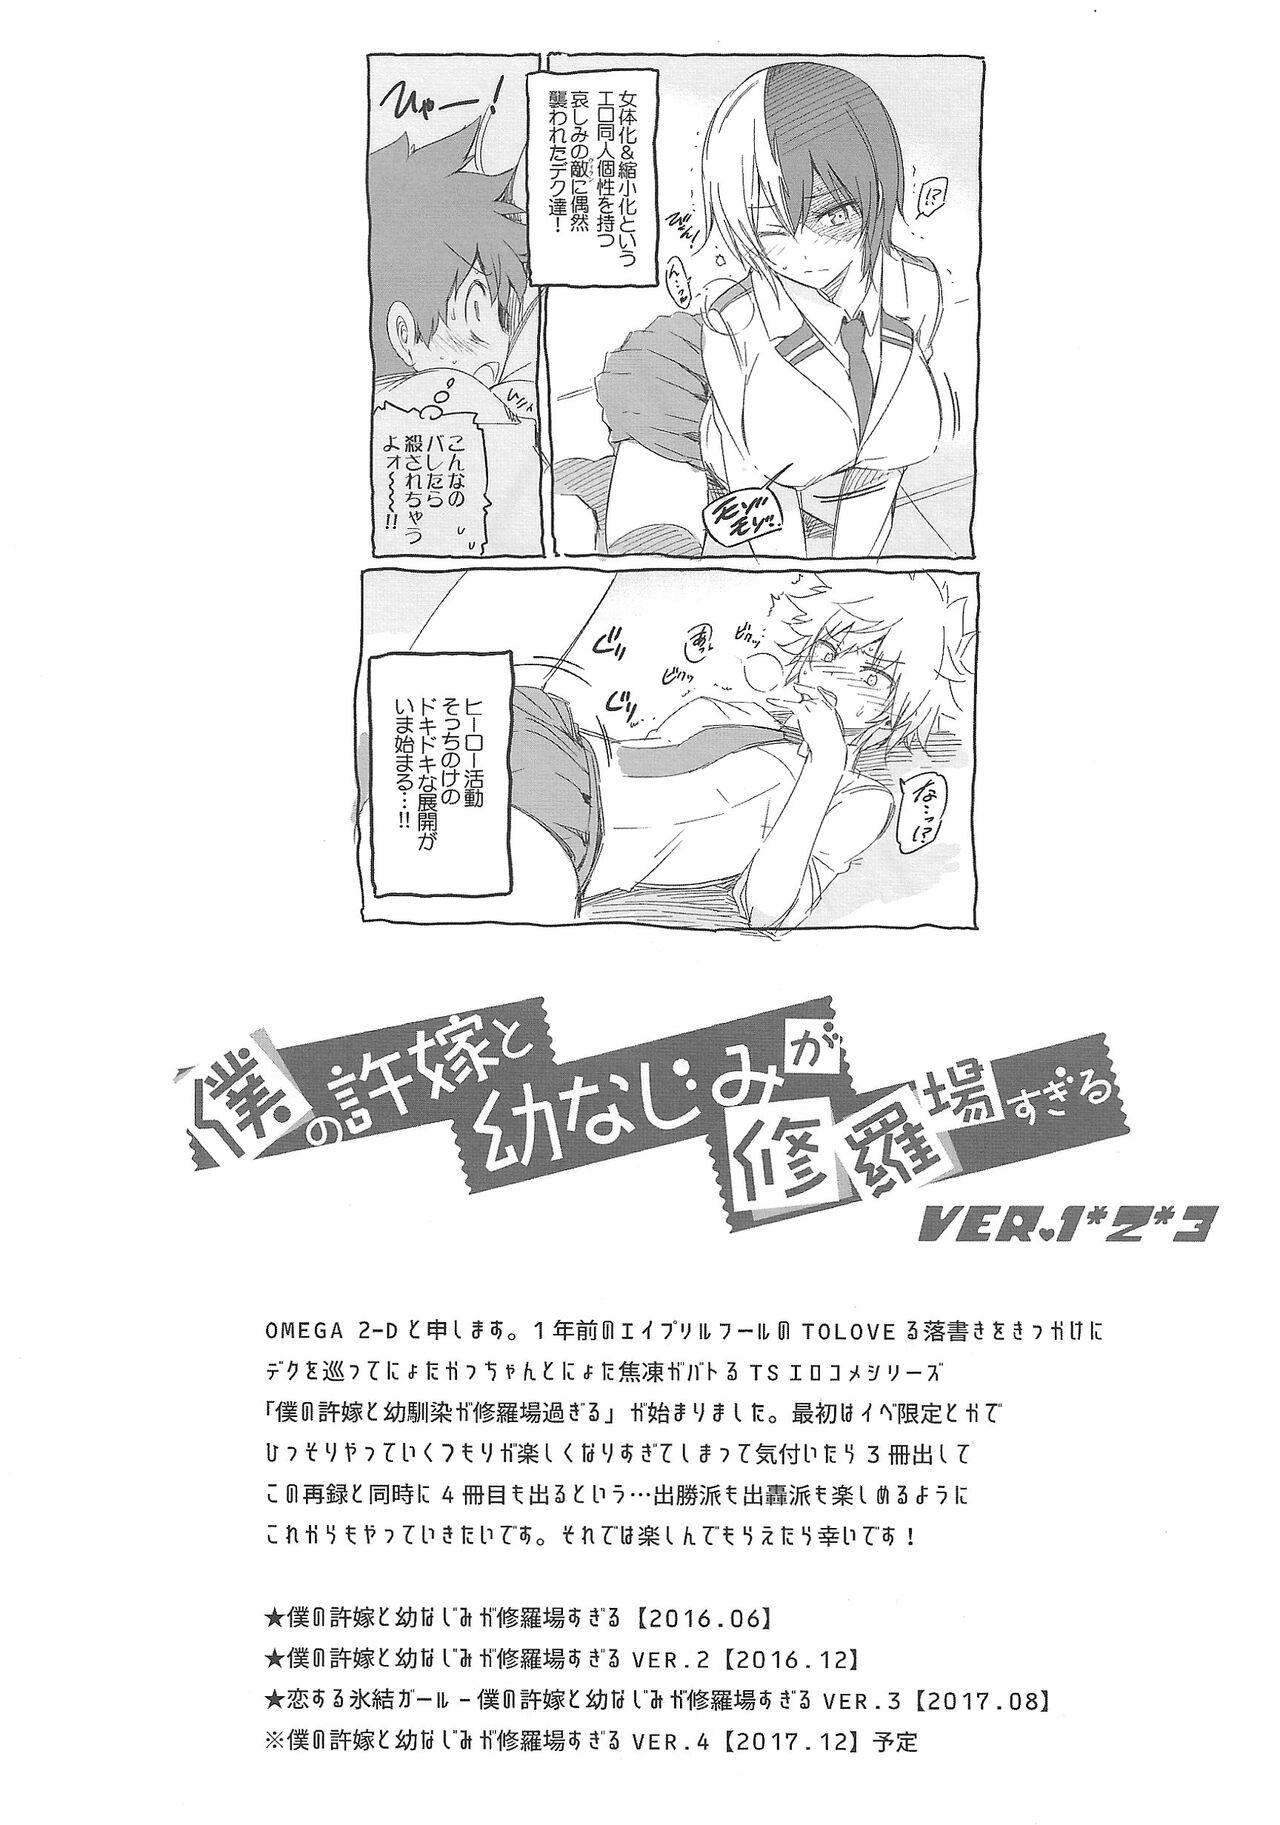 Slim Boku no Iinazuke to Osananajimi ga Shuraba Sugiru Volume 1, 2 & 3 - My hero academia | boku no hero academia Studs - Page 3